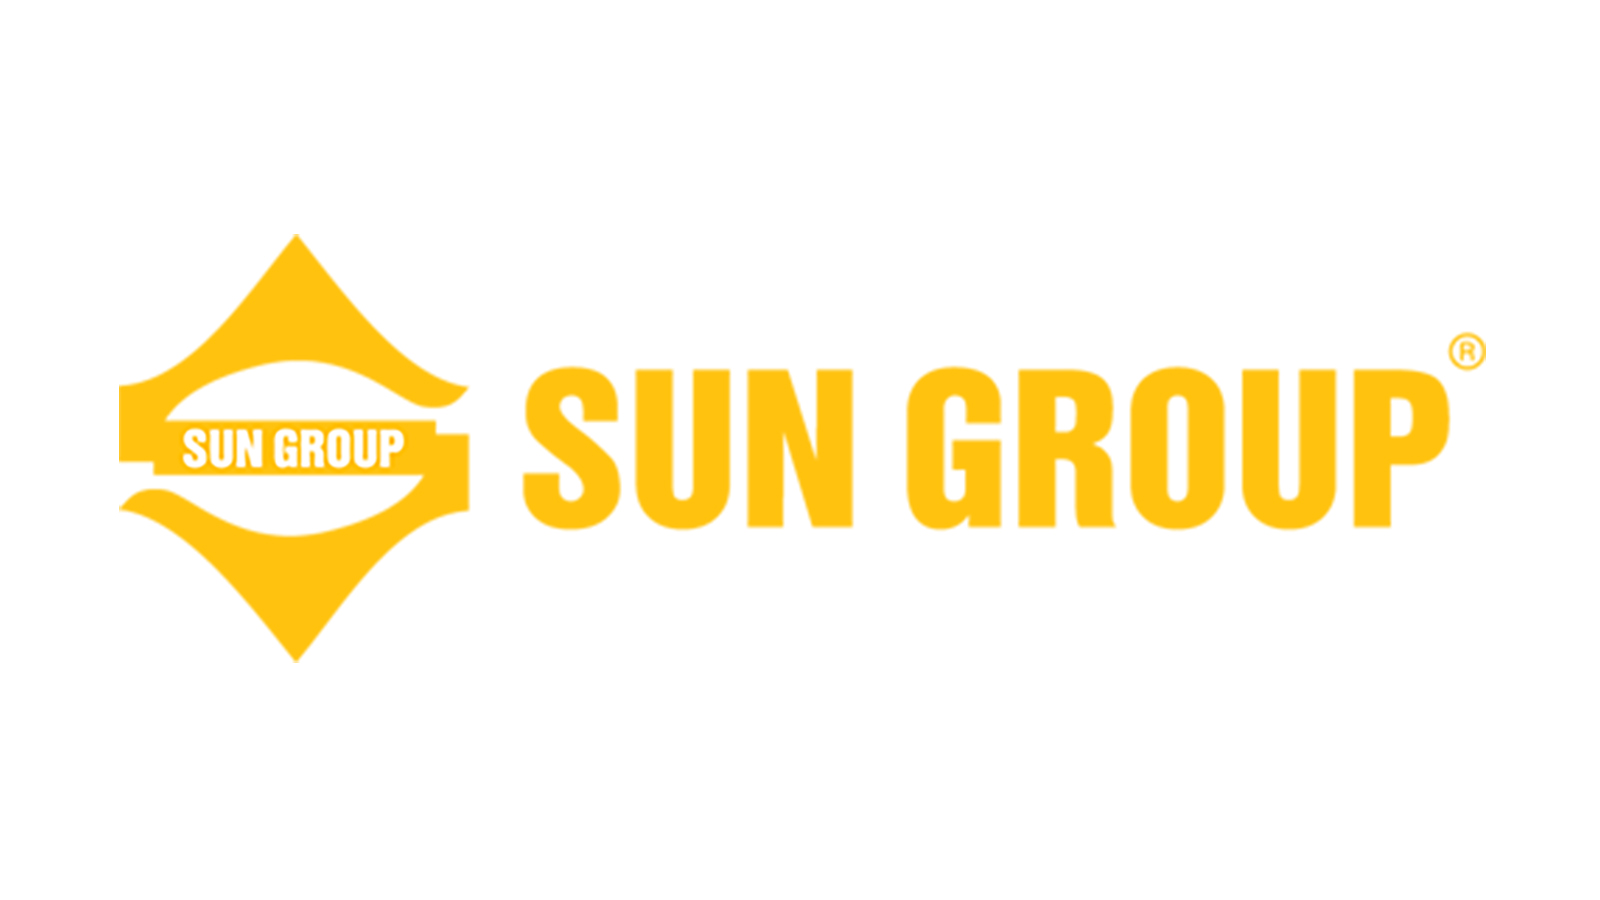 Sun Group với vị thế lớn trên thị trường bất động sản